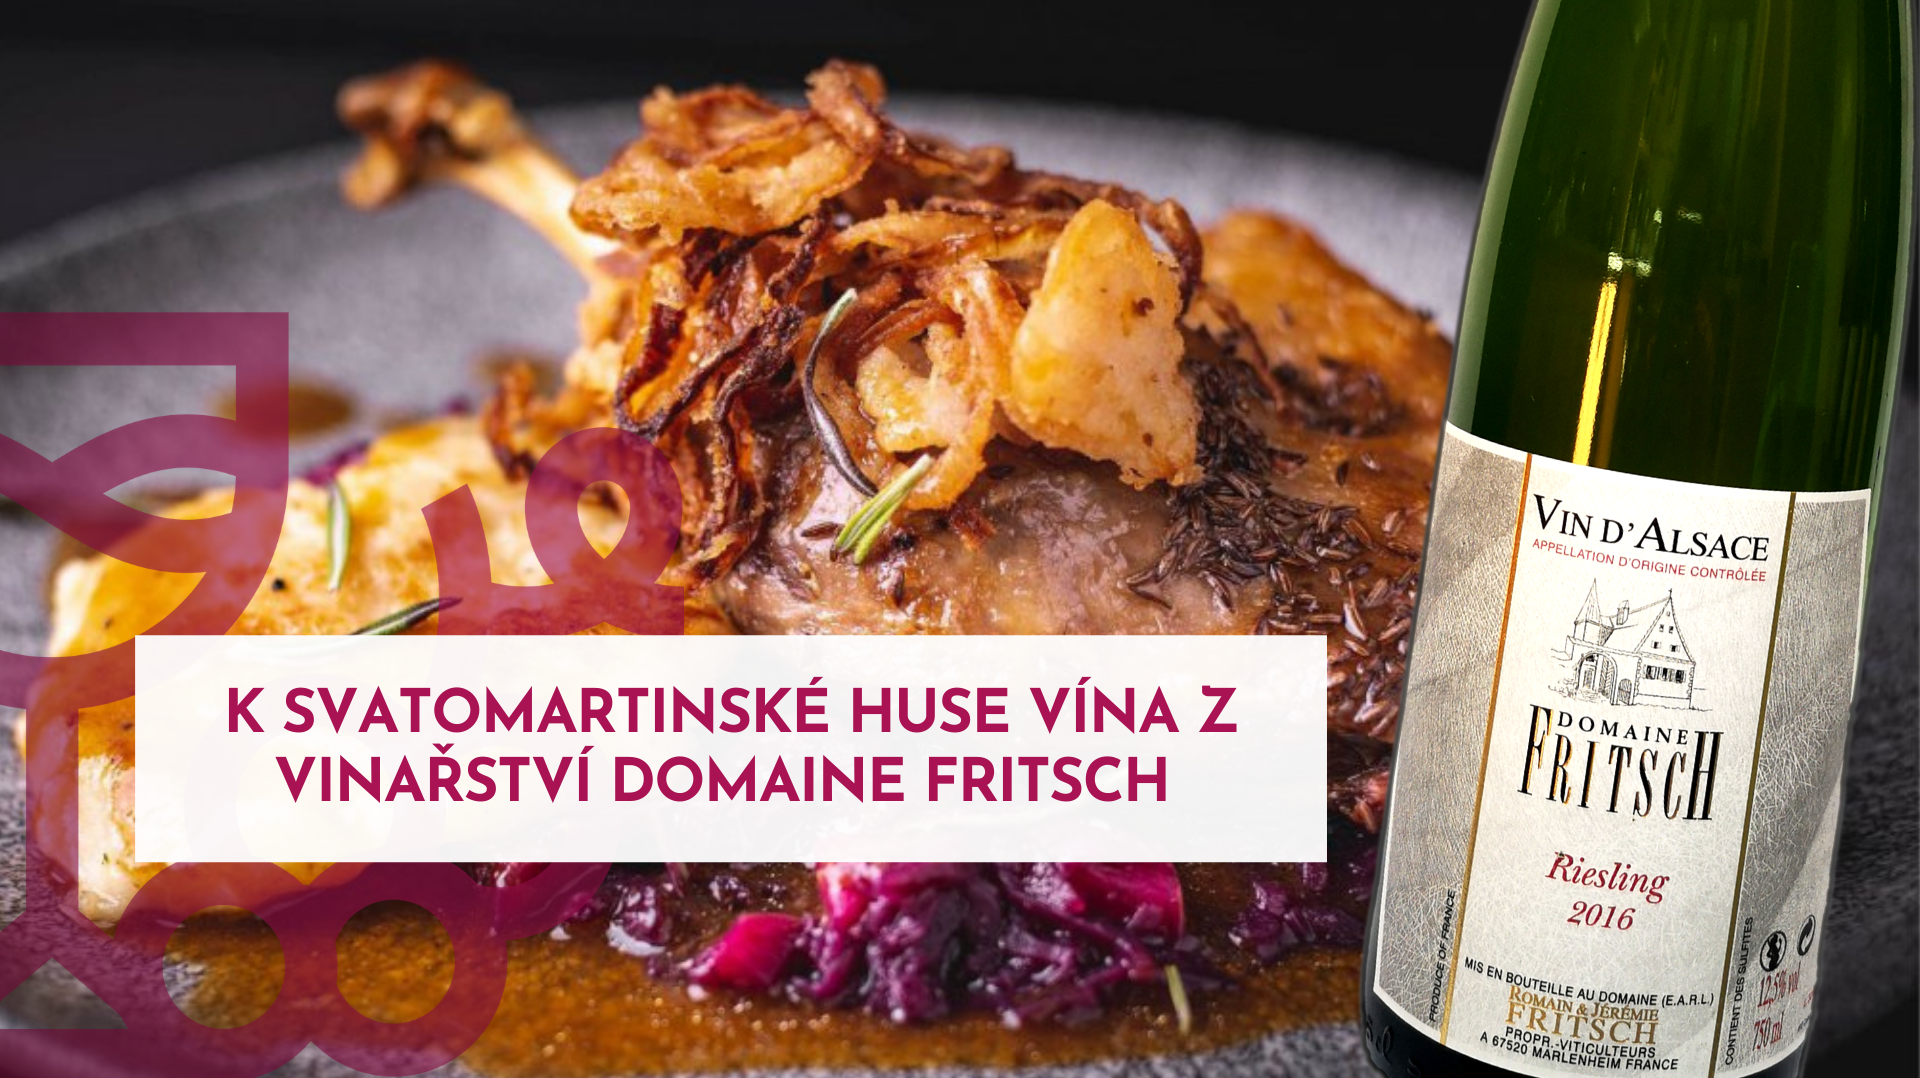 K svatomartinské huse vína z vinařství Domaine Fritsch